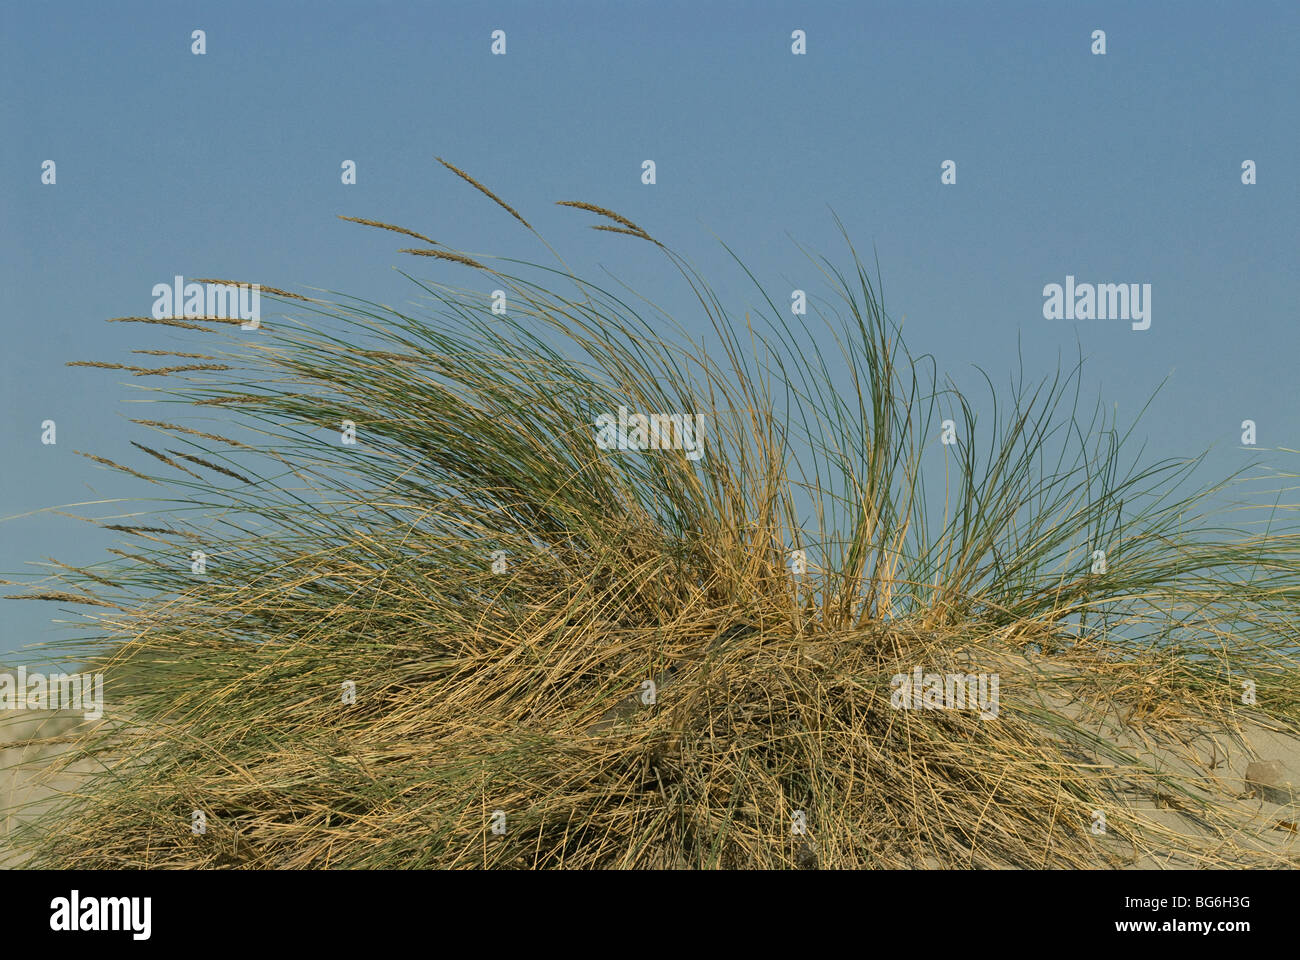 France, Camargue, dune vegetation Stock Photo